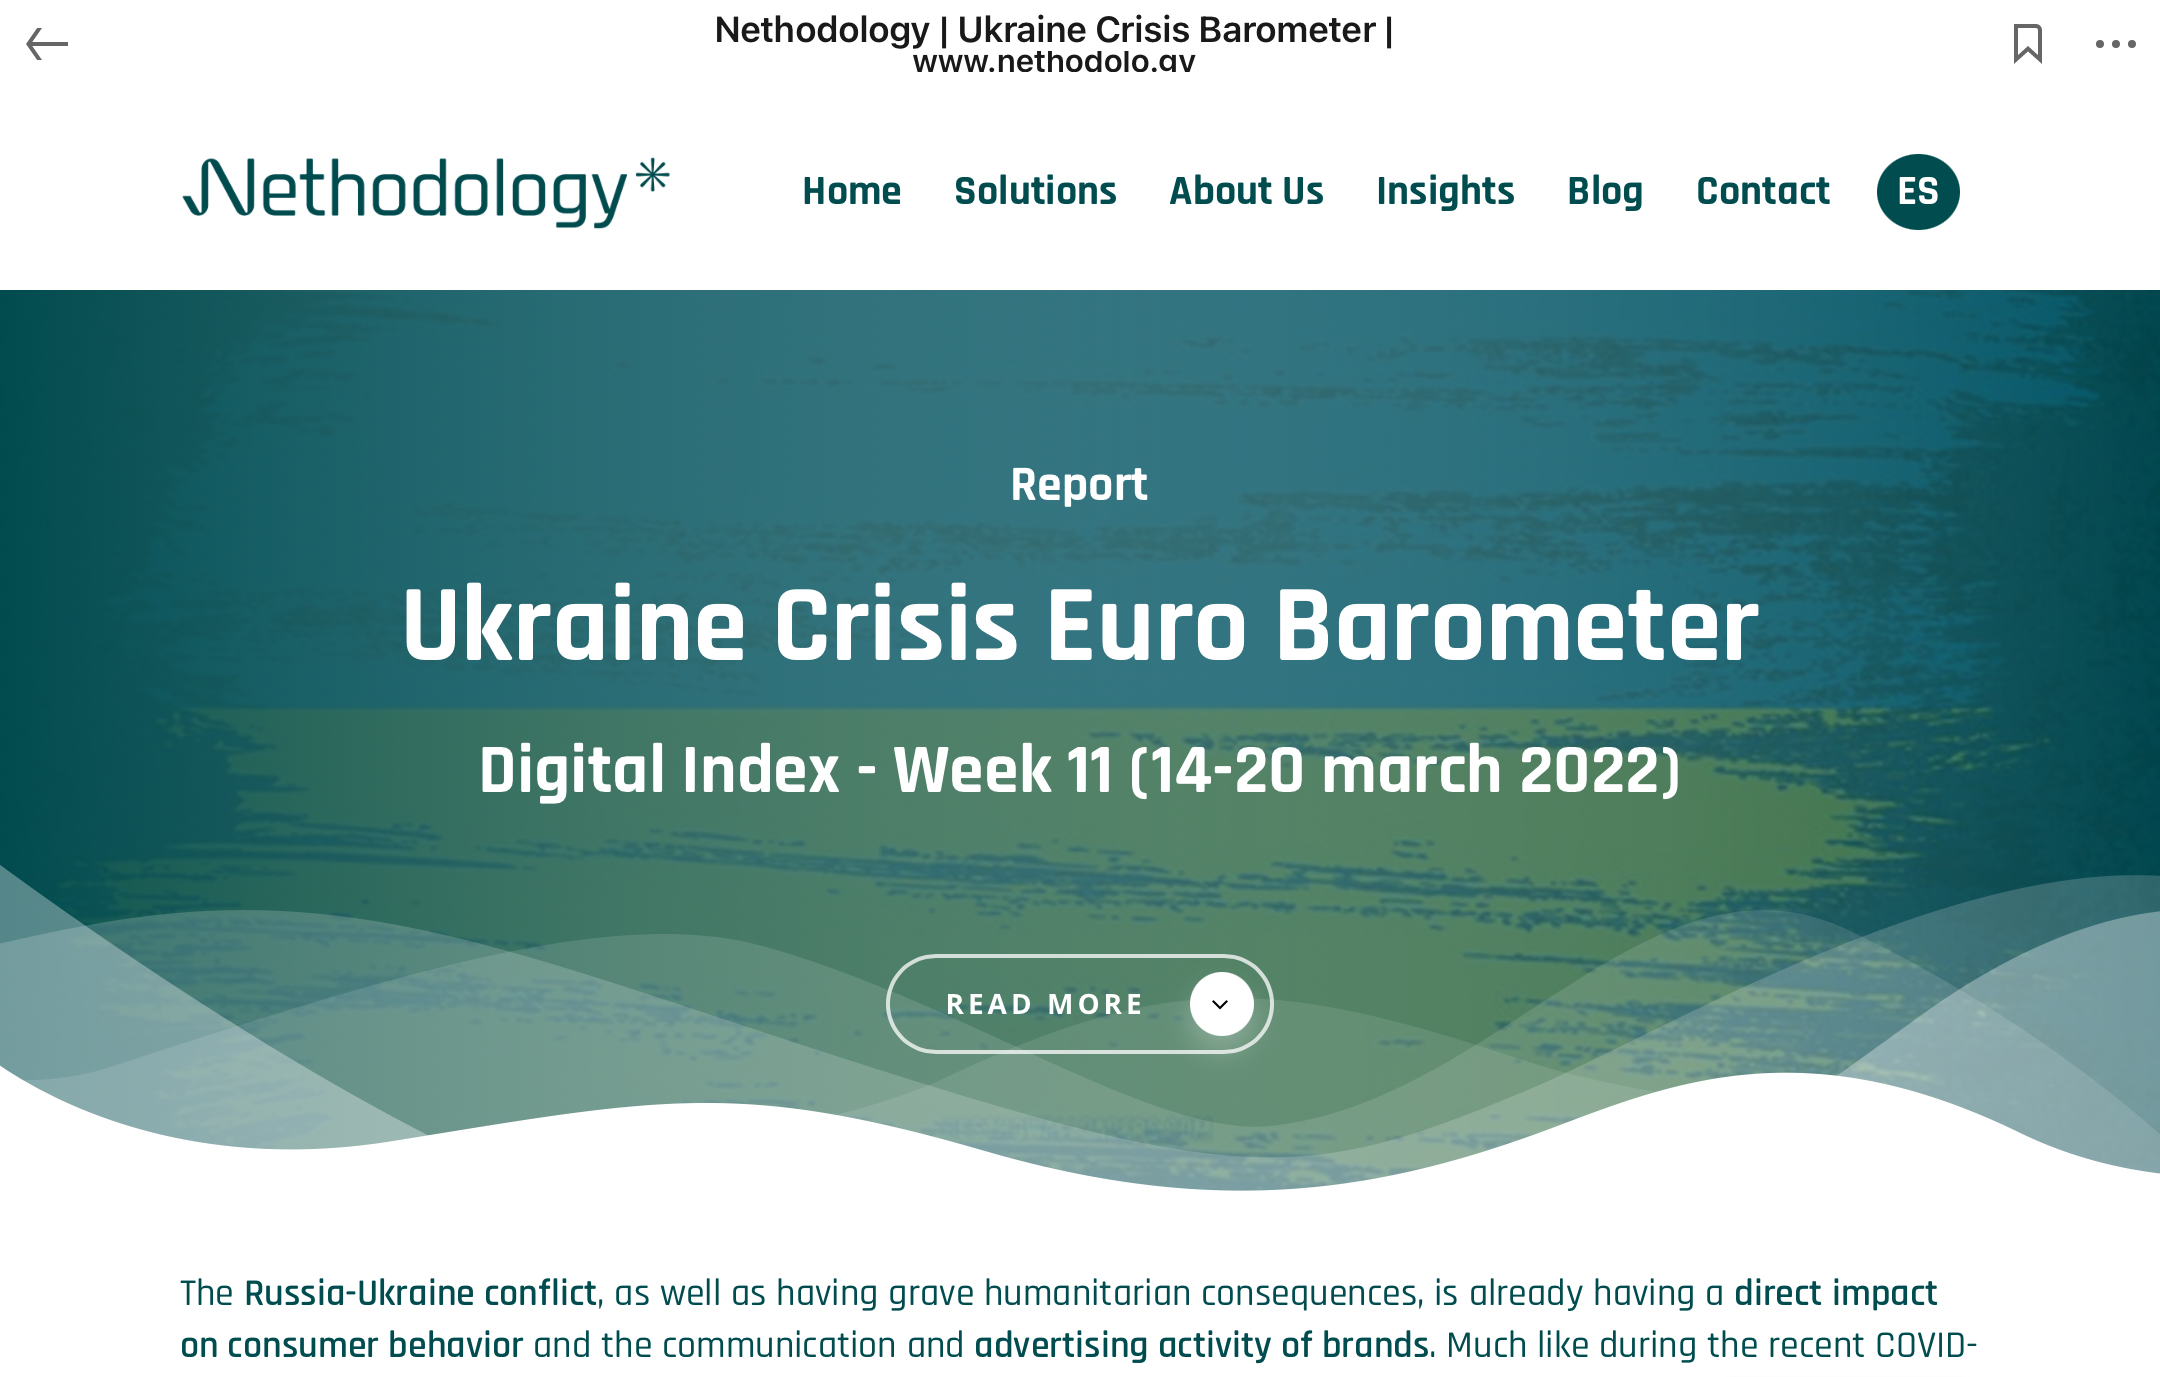 Nethodology - Ukraine Crisis